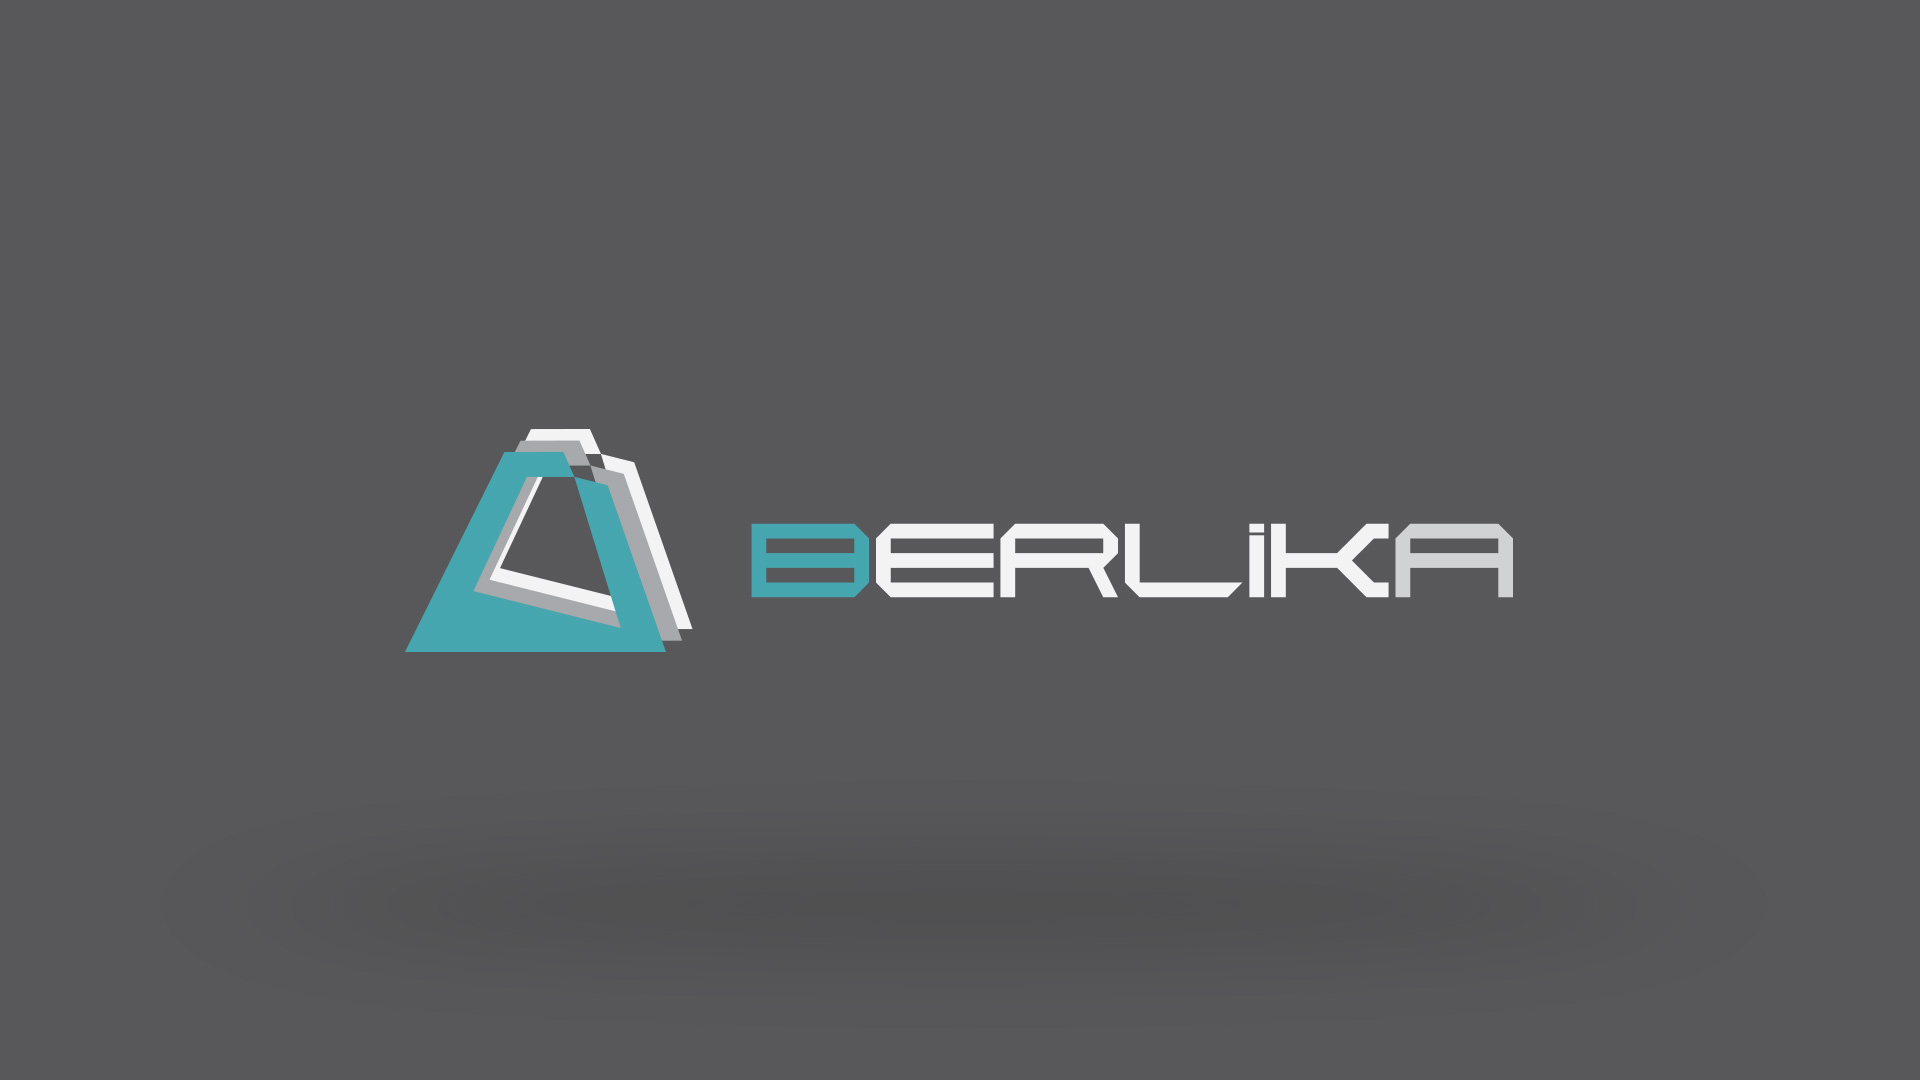 berlika-logo-image